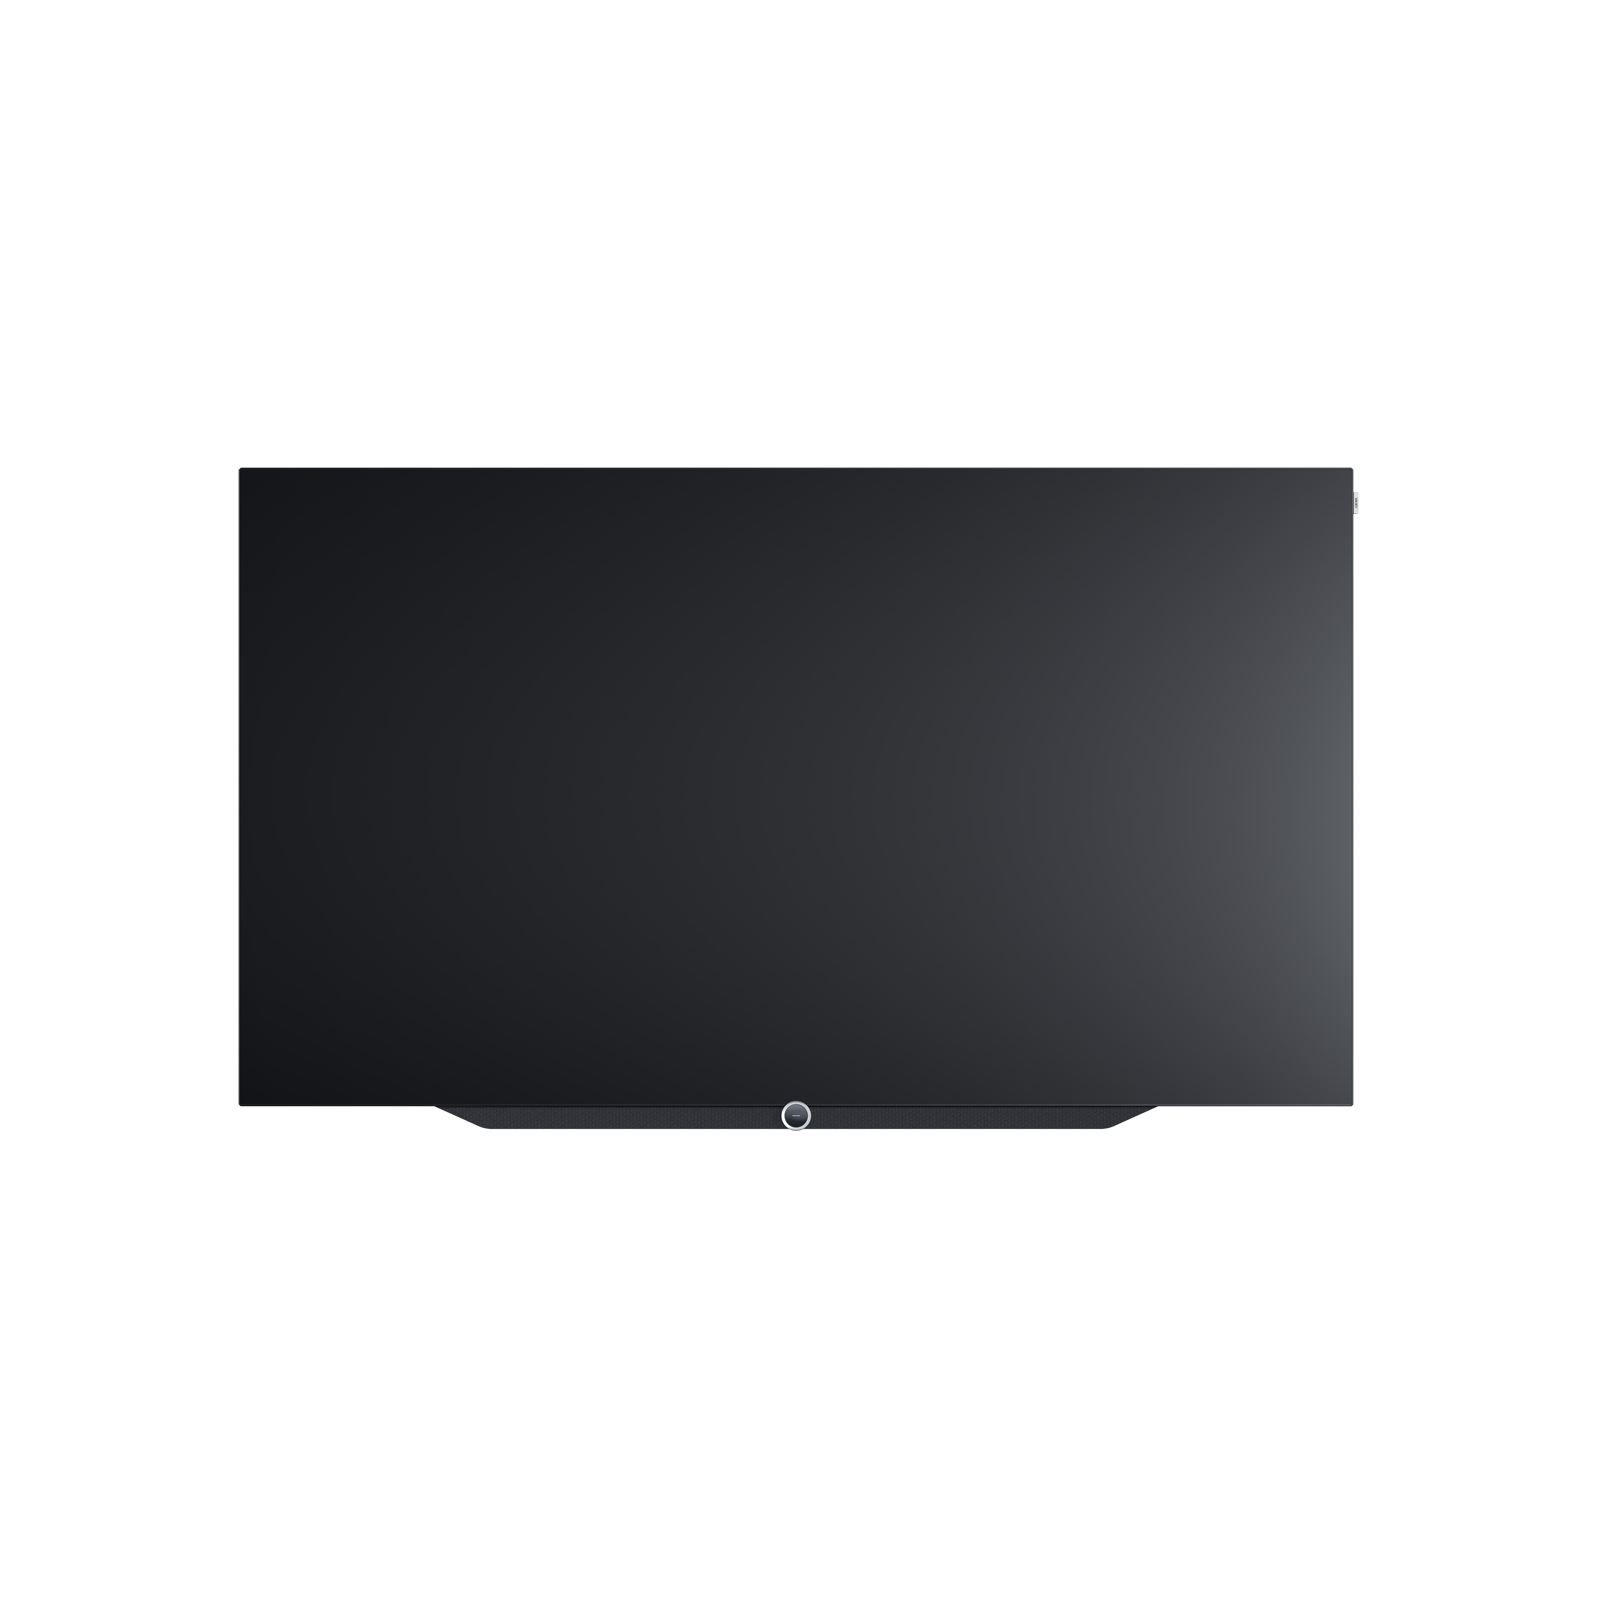 Телевизоры серого цвета. Loewe Bild v.55. Loewe Bild s.77. Телевизор OLED Loewe Bild 9.65 64.5" (2017). Телевизор OLED Loewe Bild 5.55 OLED 54.6" (2018).